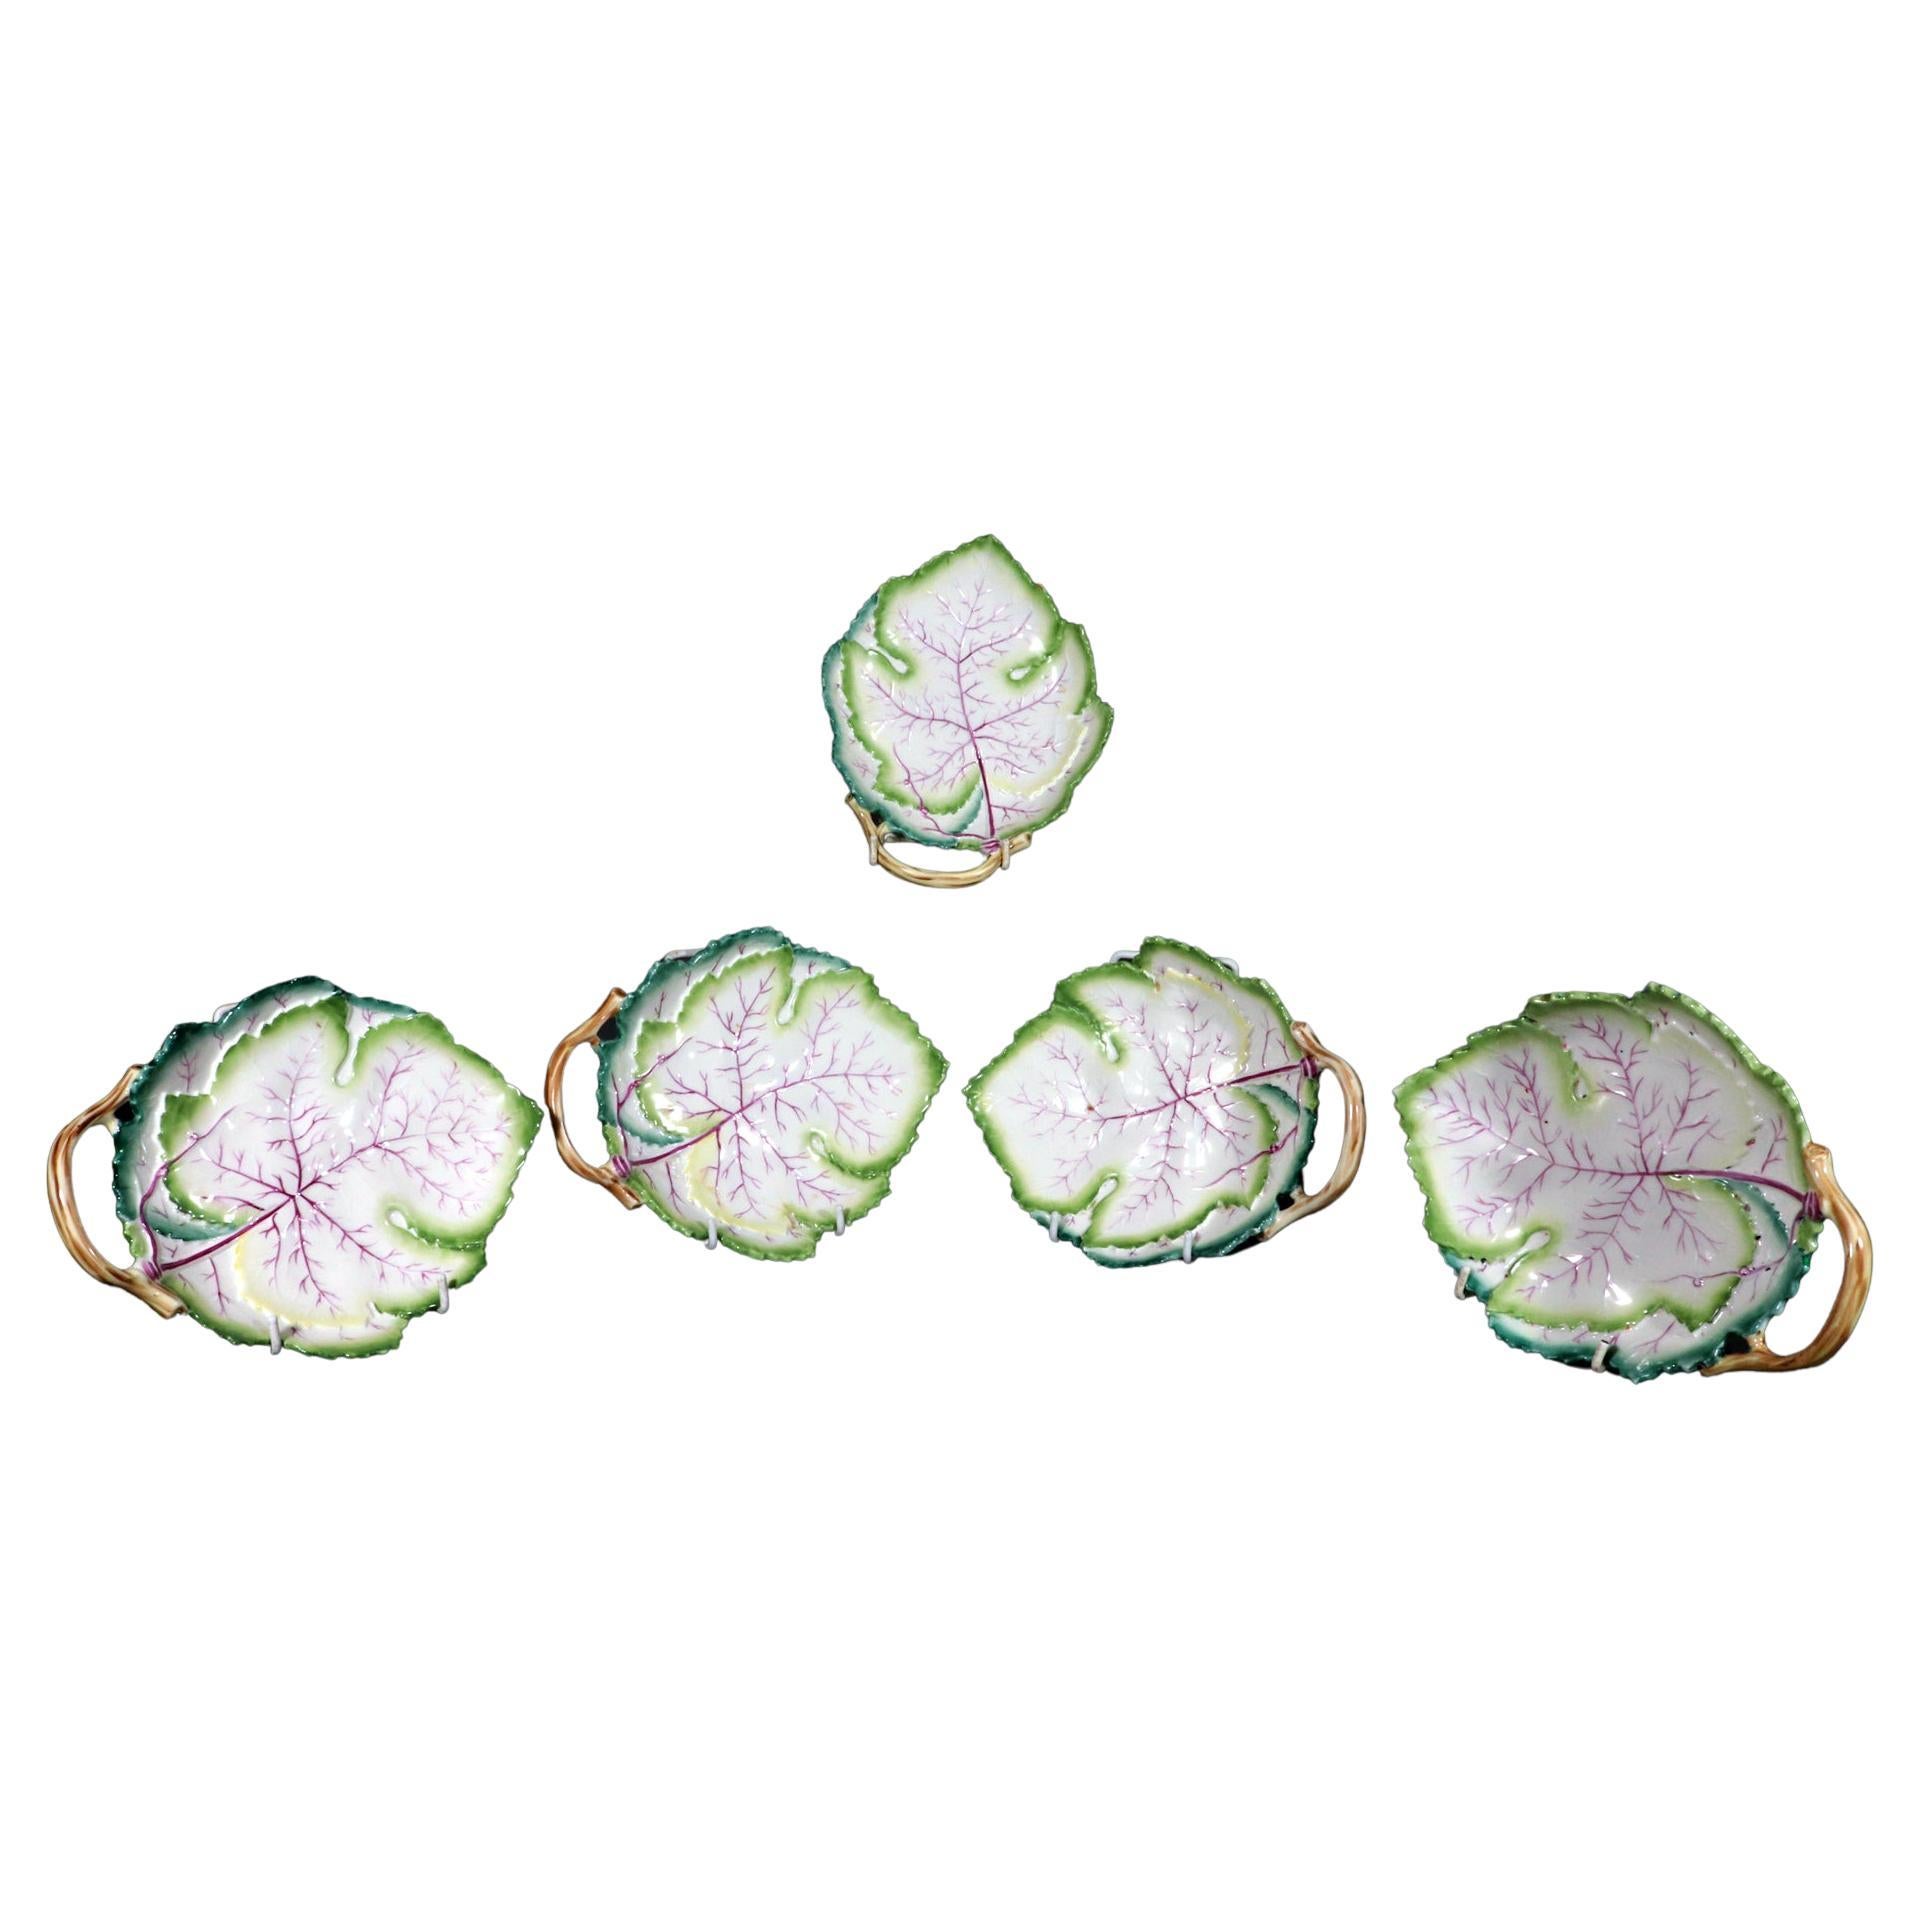 Royal Worcester Bone China Porcelain Leaf-shaped Dishes, Pattern 3628